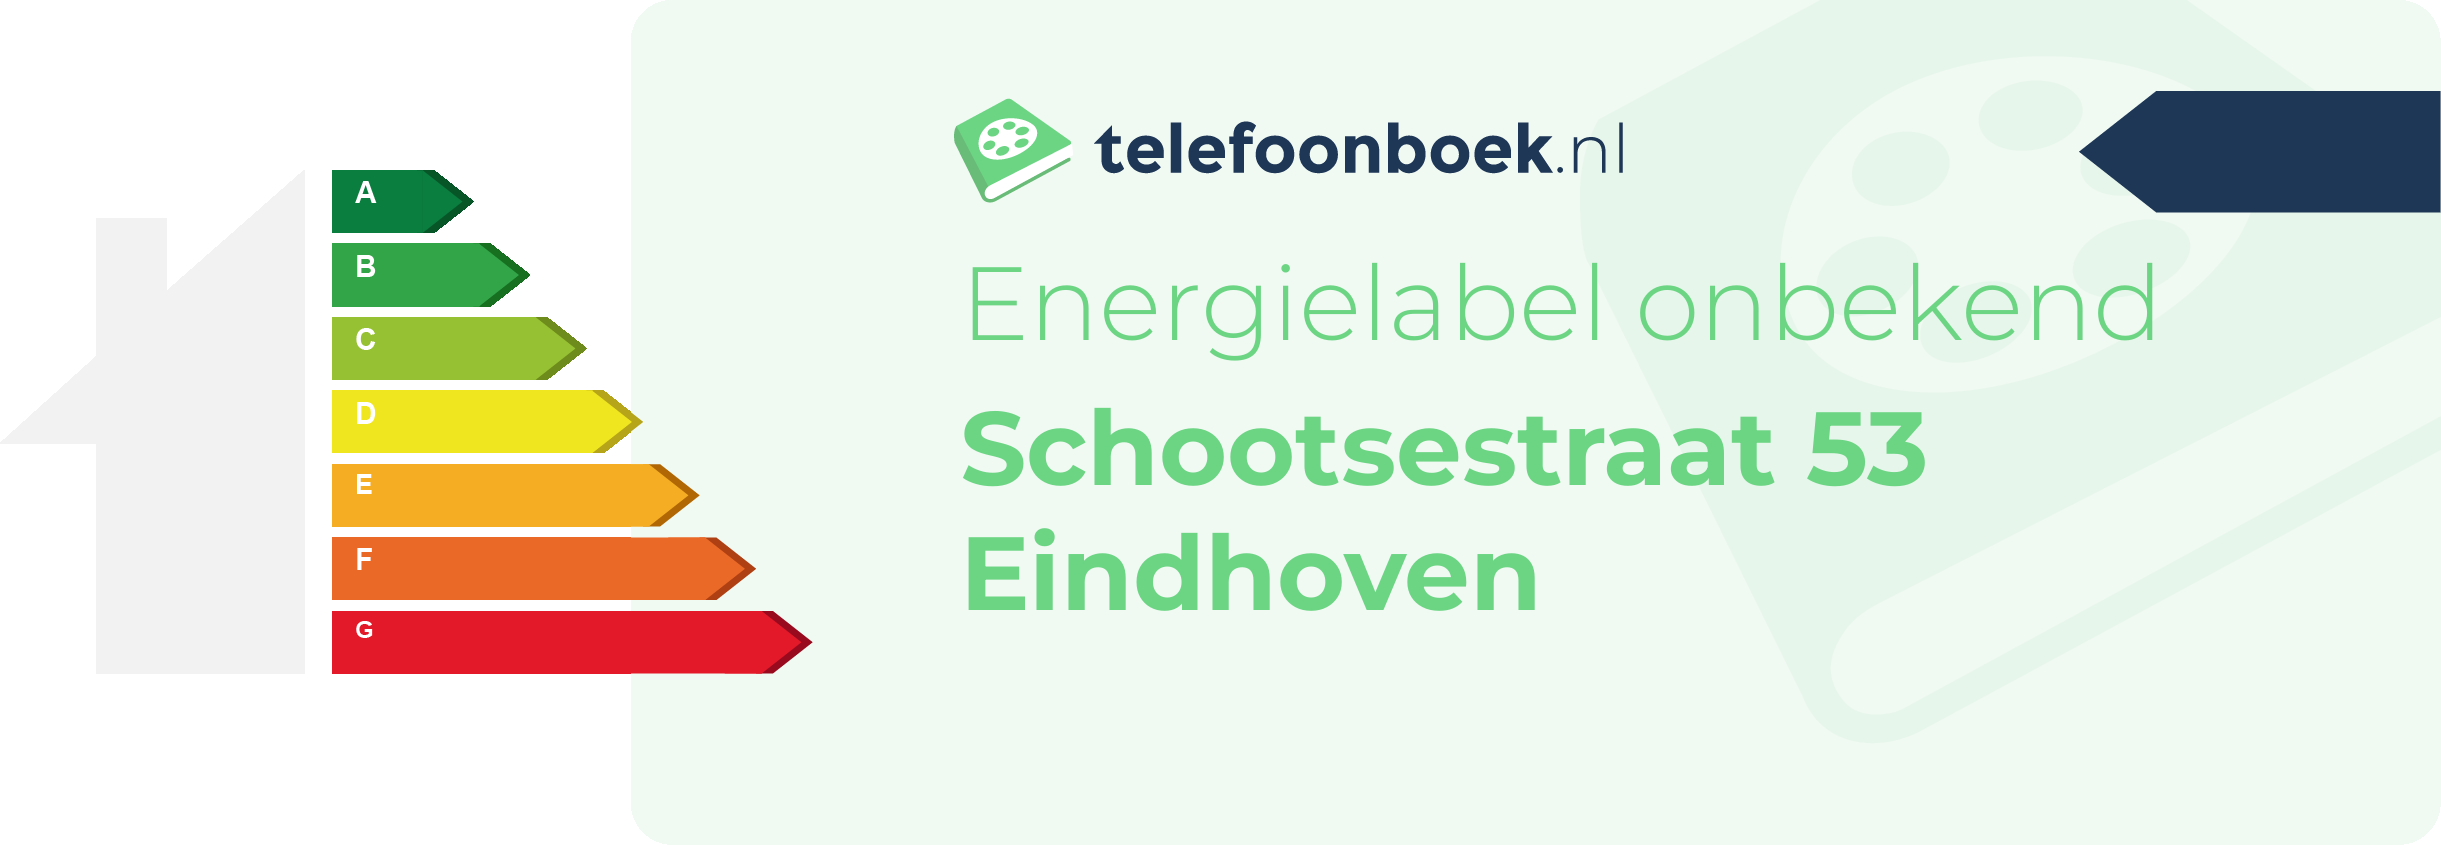 Energielabel Schootsestraat 53 Eindhoven